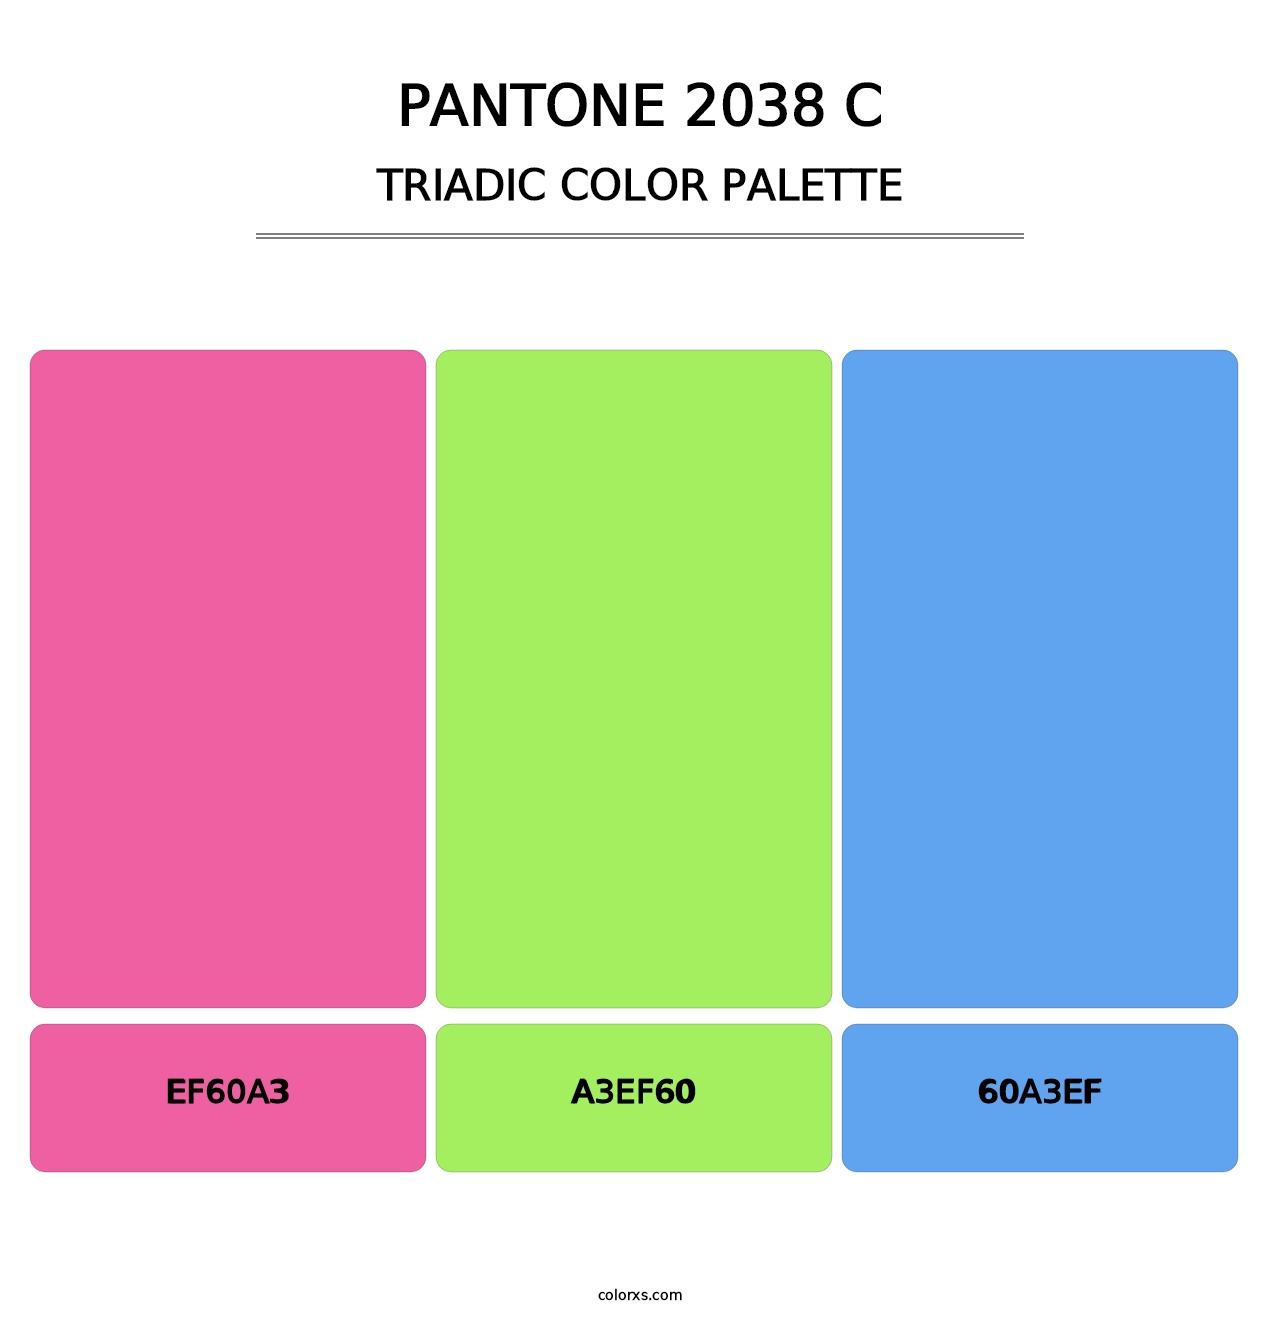 PANTONE 2038 C - Triadic Color Palette